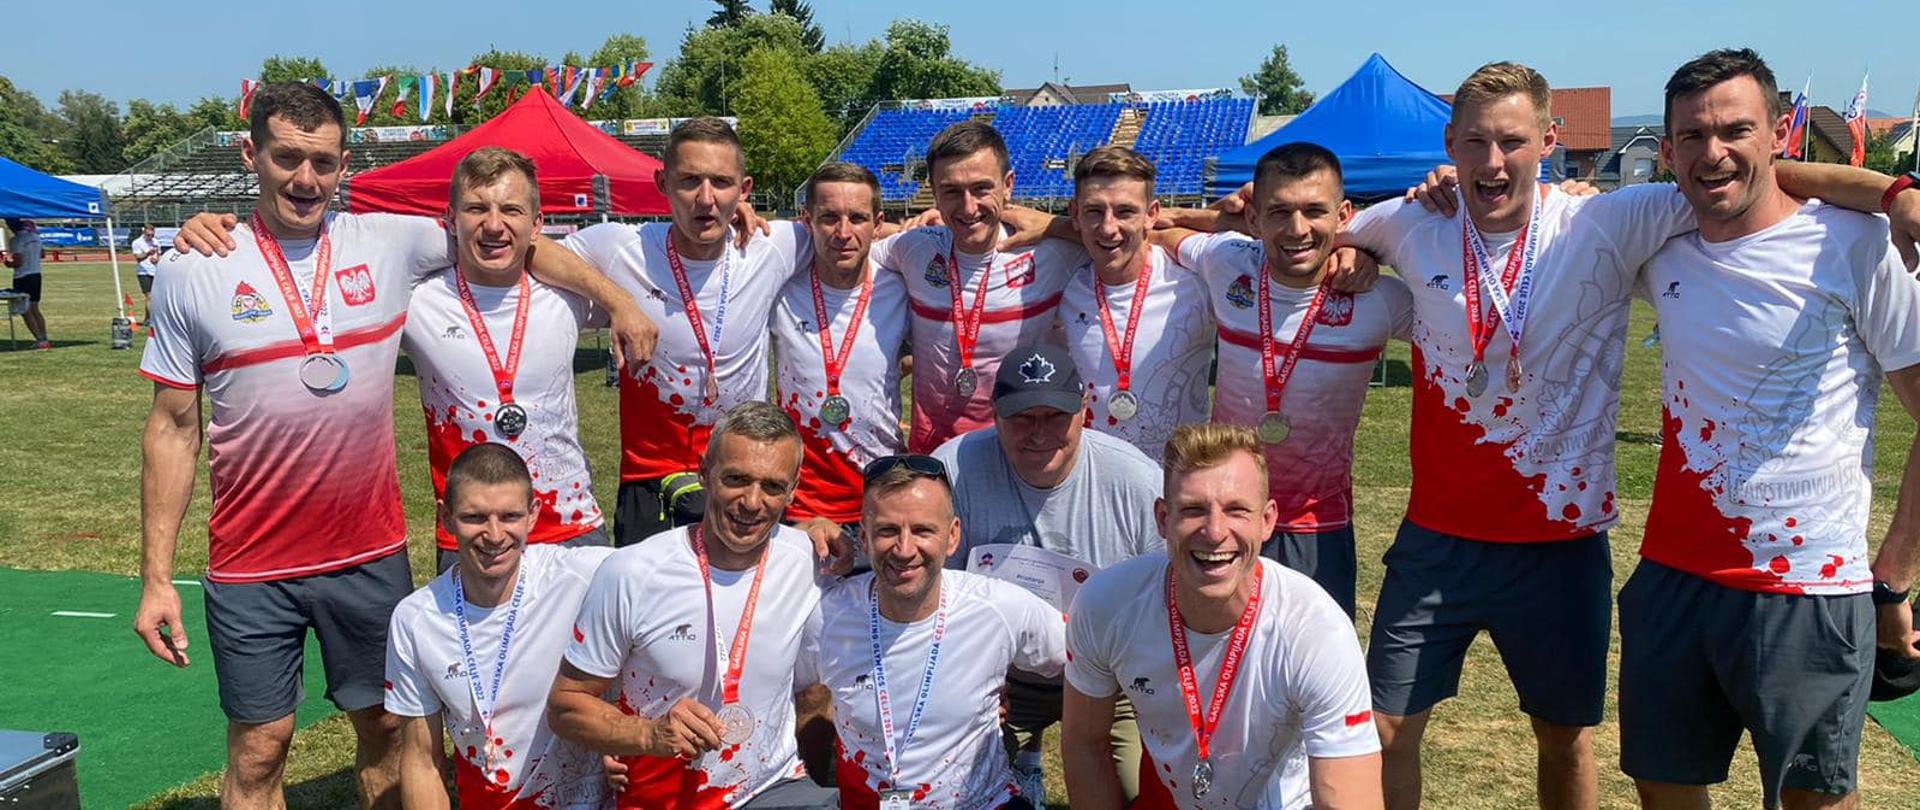 Na zdjęciu widzimy reprezentantów Polski. Czternastu mężczyzn w biało-czerwonych koszulkach.